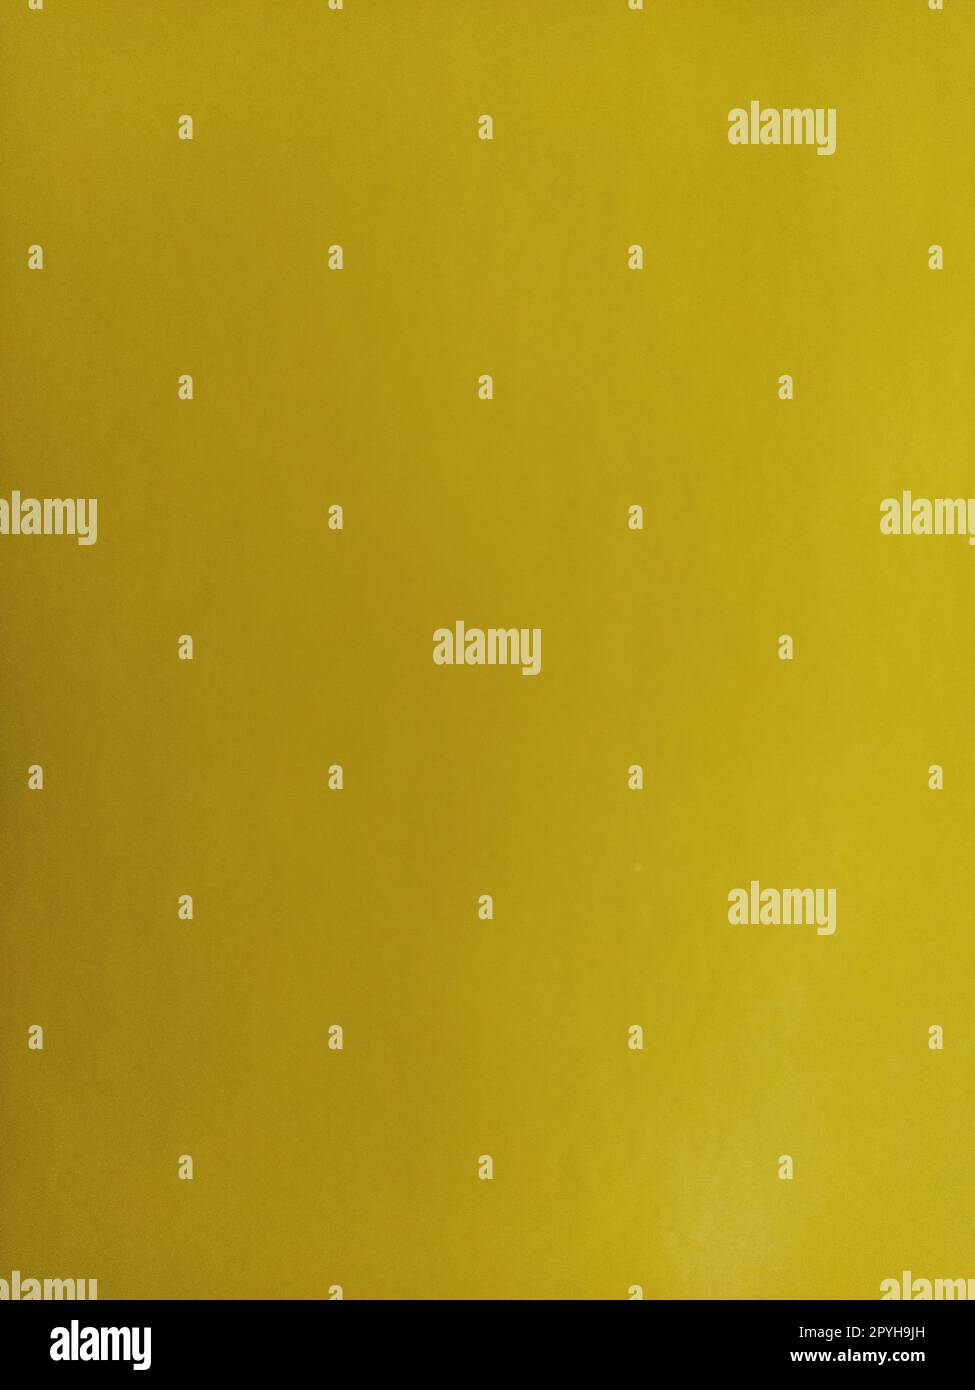 Schöner gelber Hintergrund. Eine Nahaufnahme eines Blatts Papier. Reine, fröhliche Farbe. Lebendige Gelbtöne Stockfoto